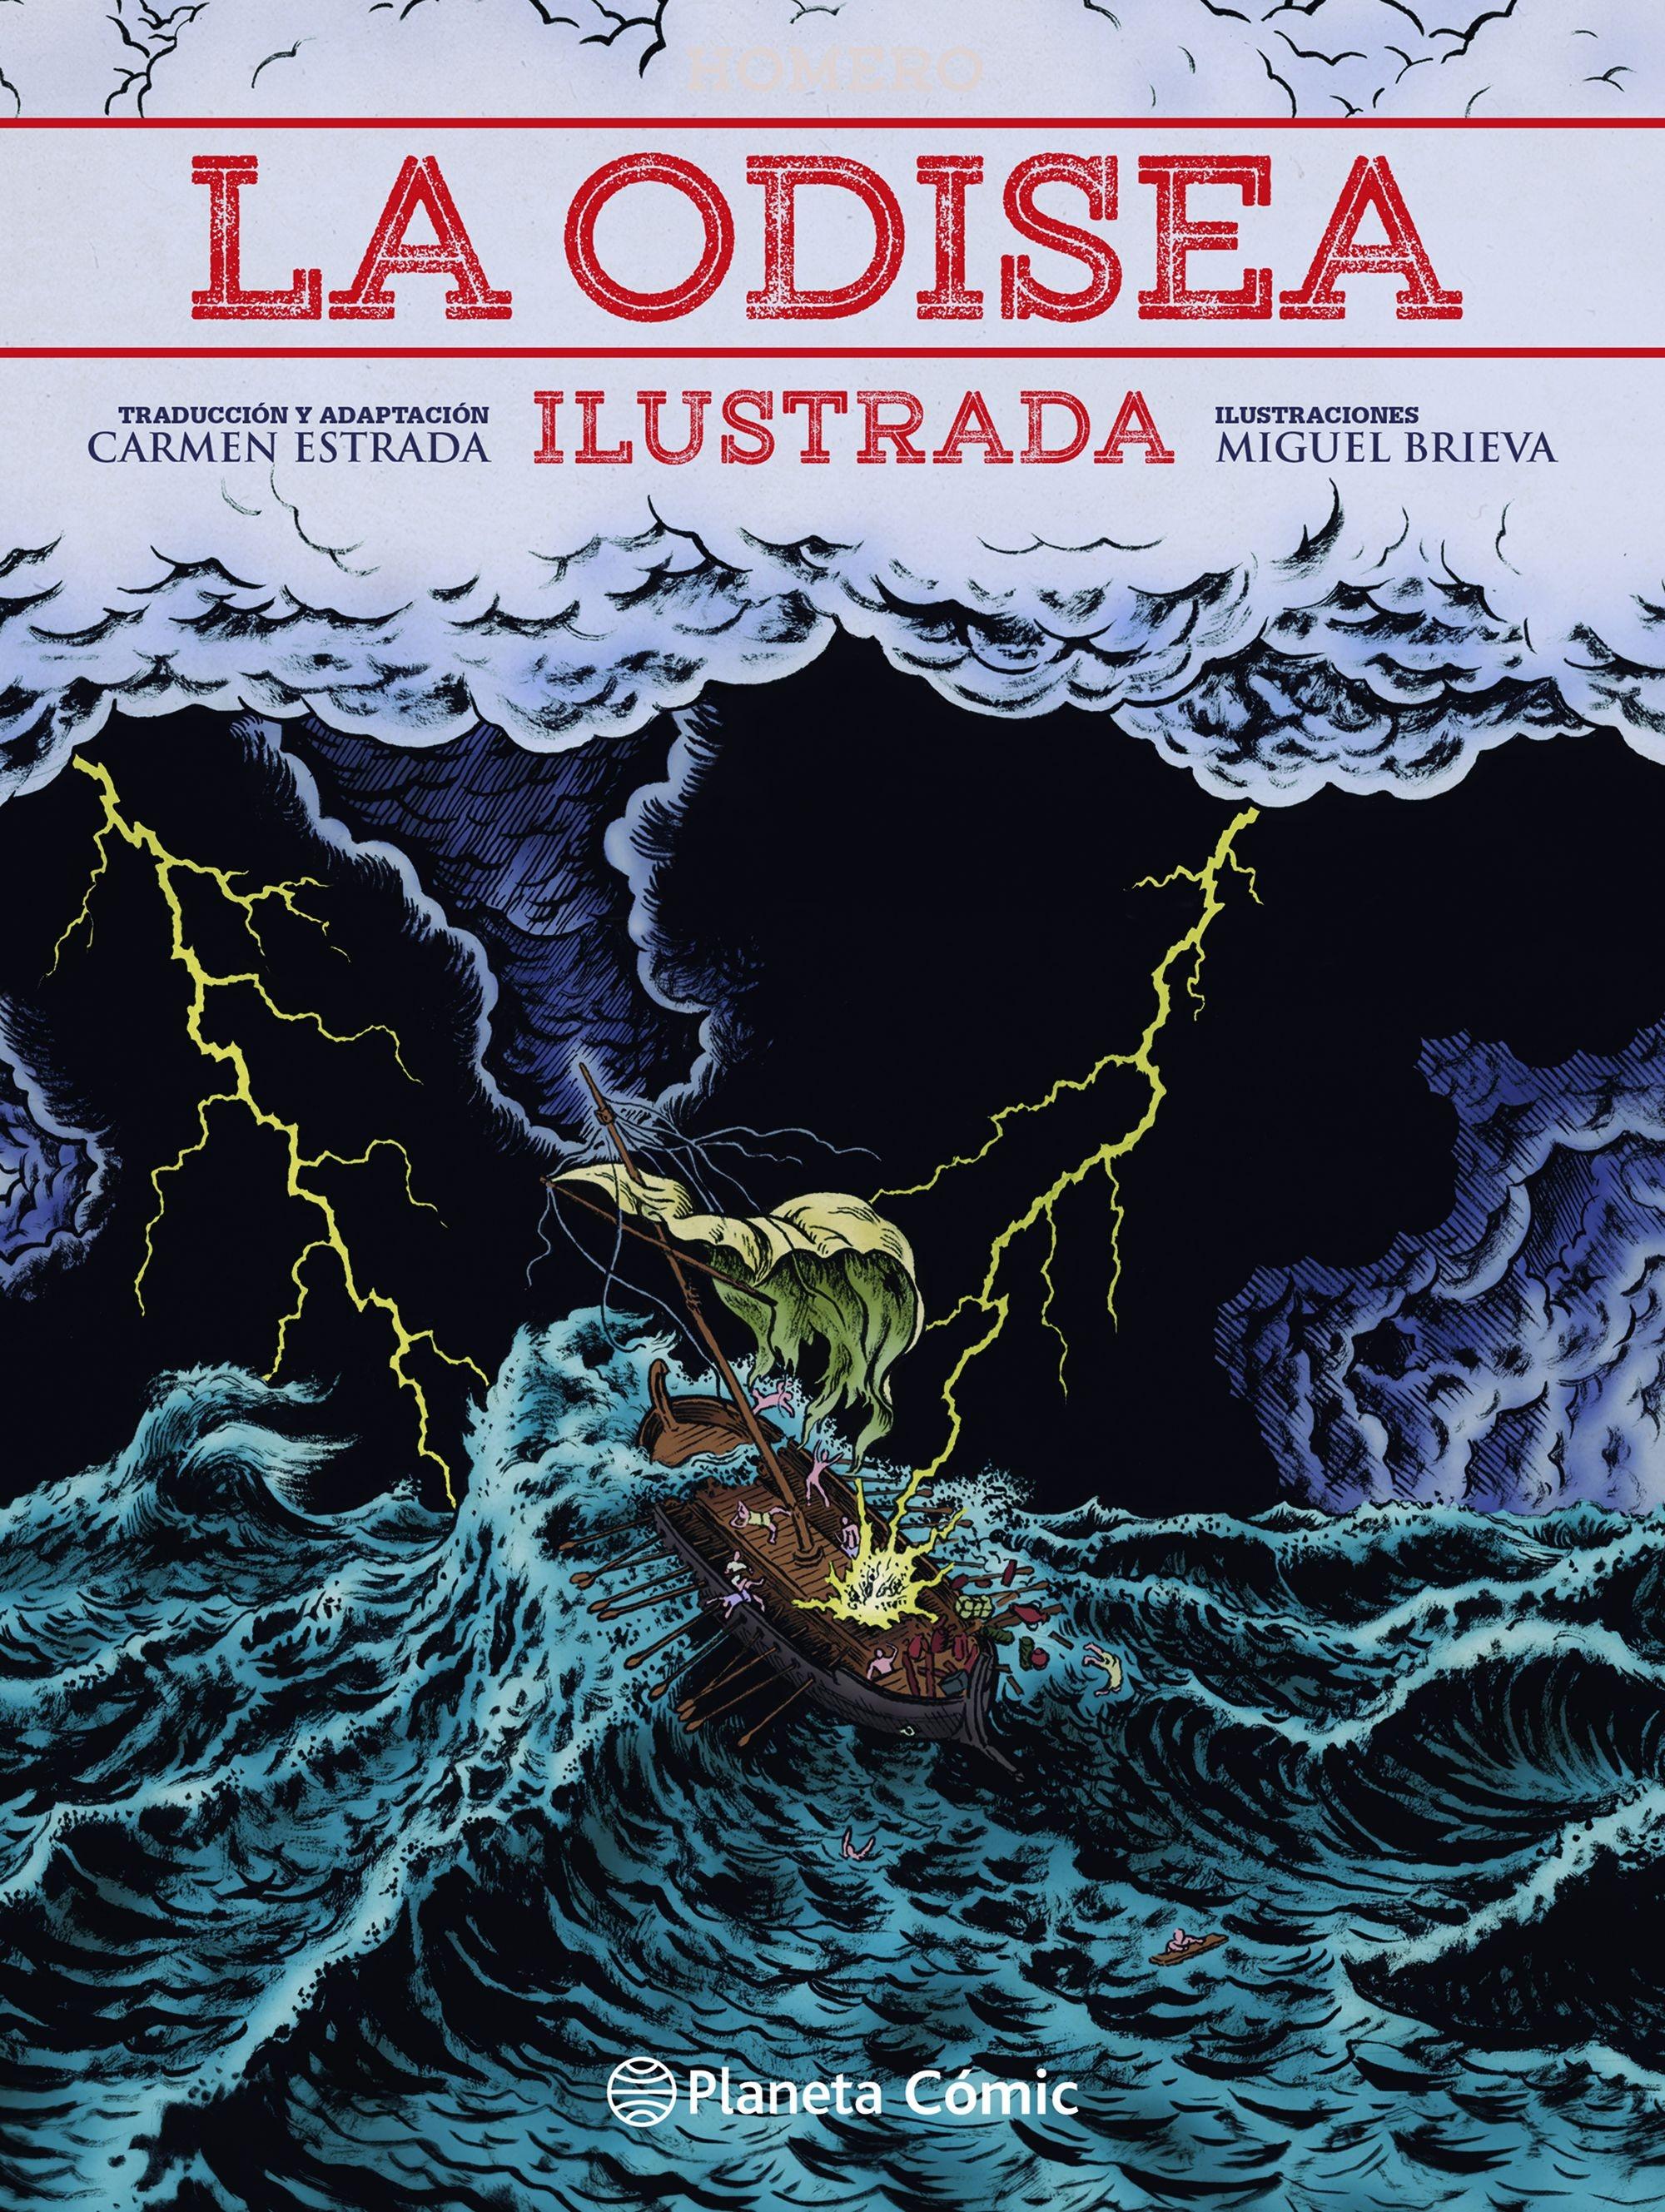 La Odisea Ilustrada por Miguel Brieva "Traducción de Carmen Estrada". 